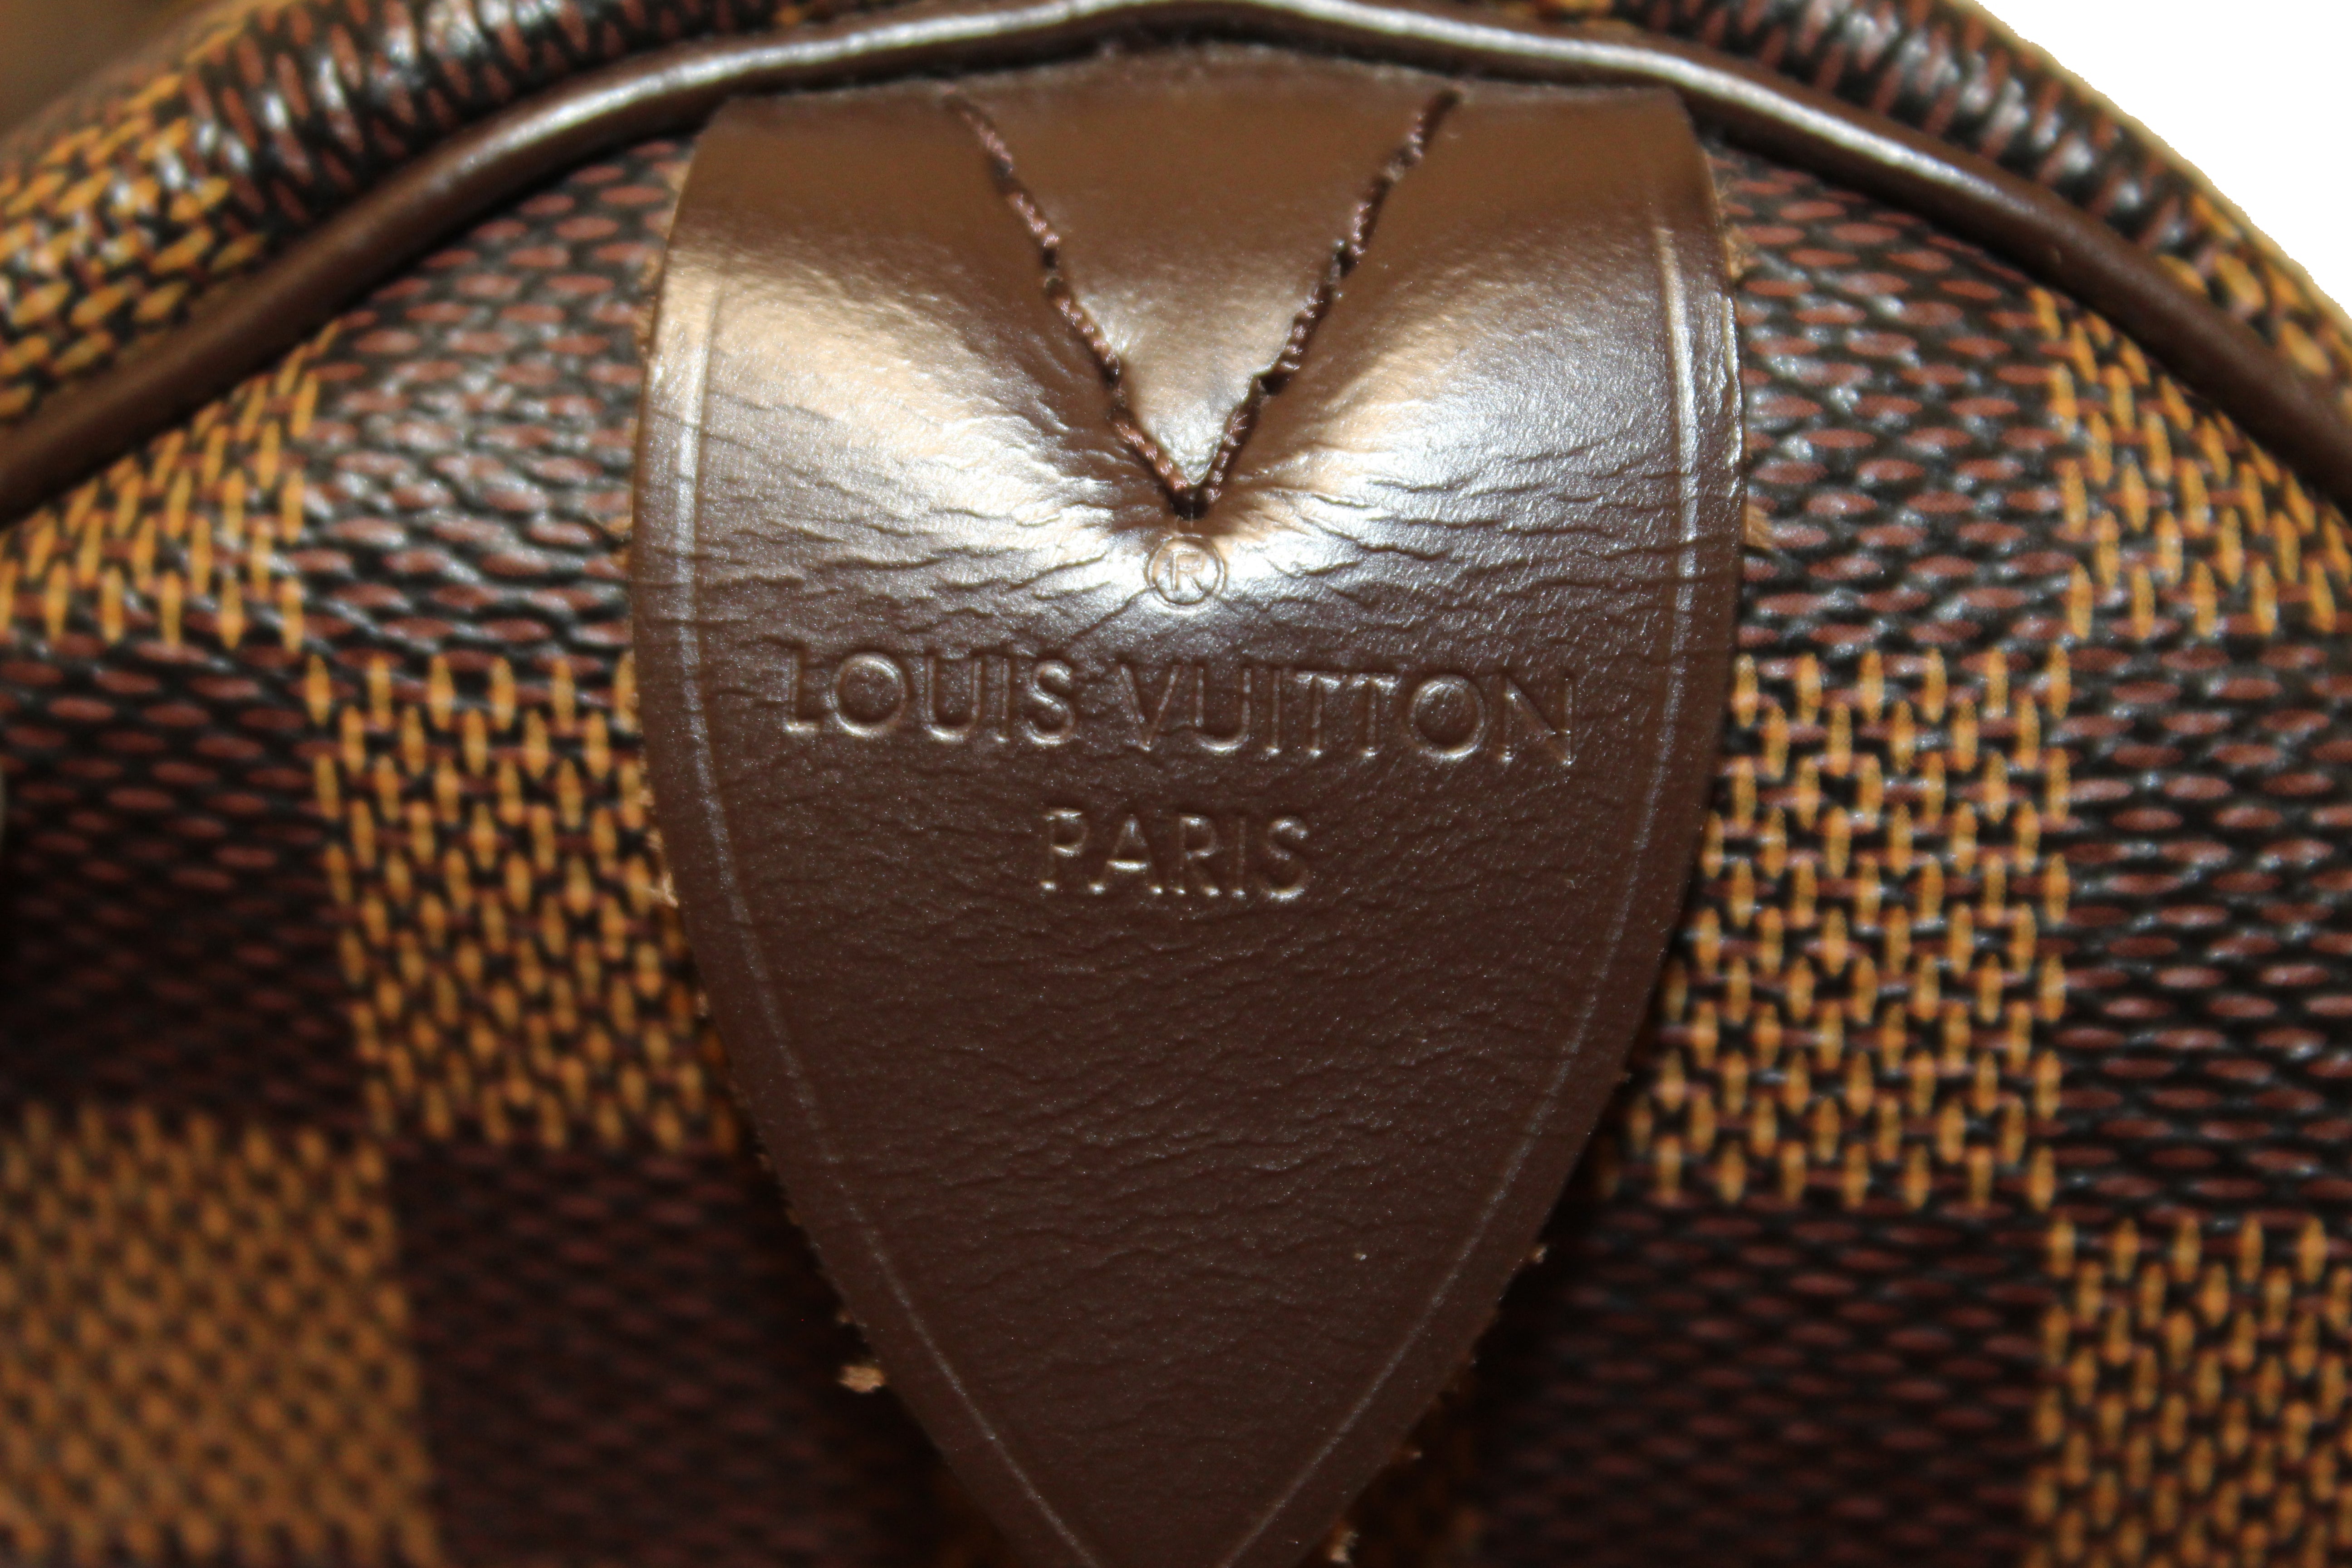 Louis Vuitton Speedy Damier Ebene 35 Brown - US